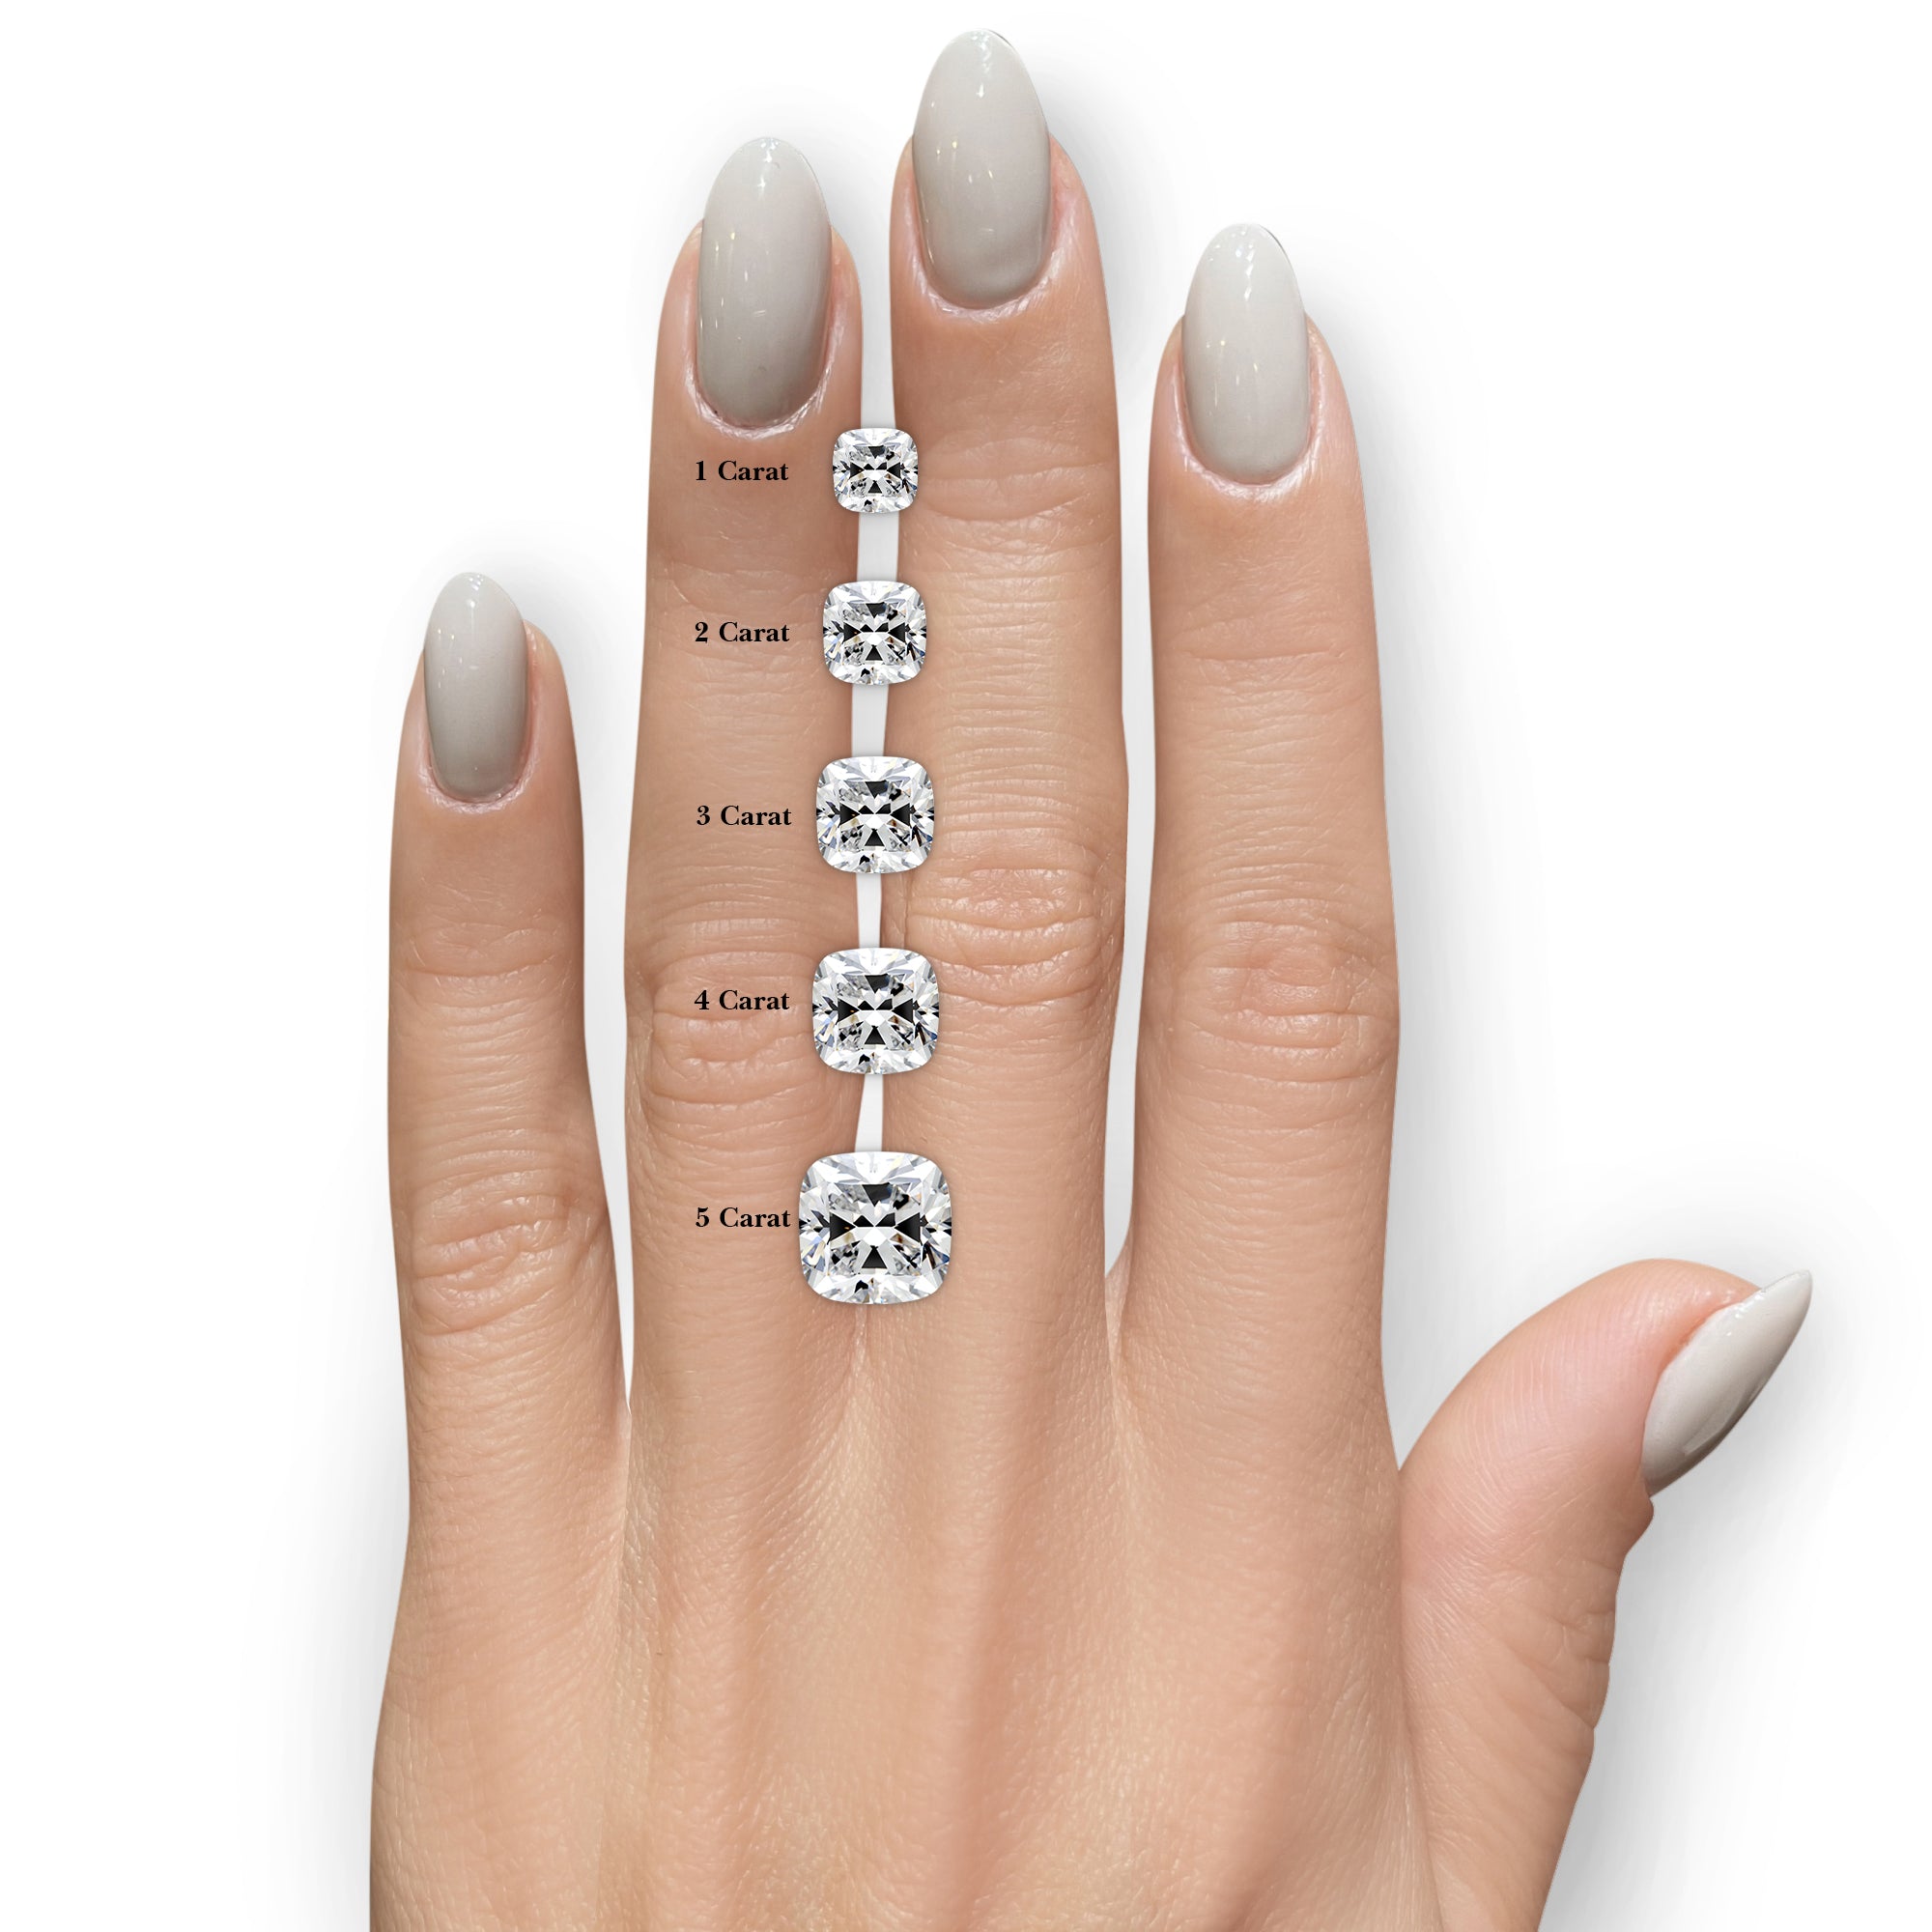 Madeline Diamond Engagement Ring -14K White Gold